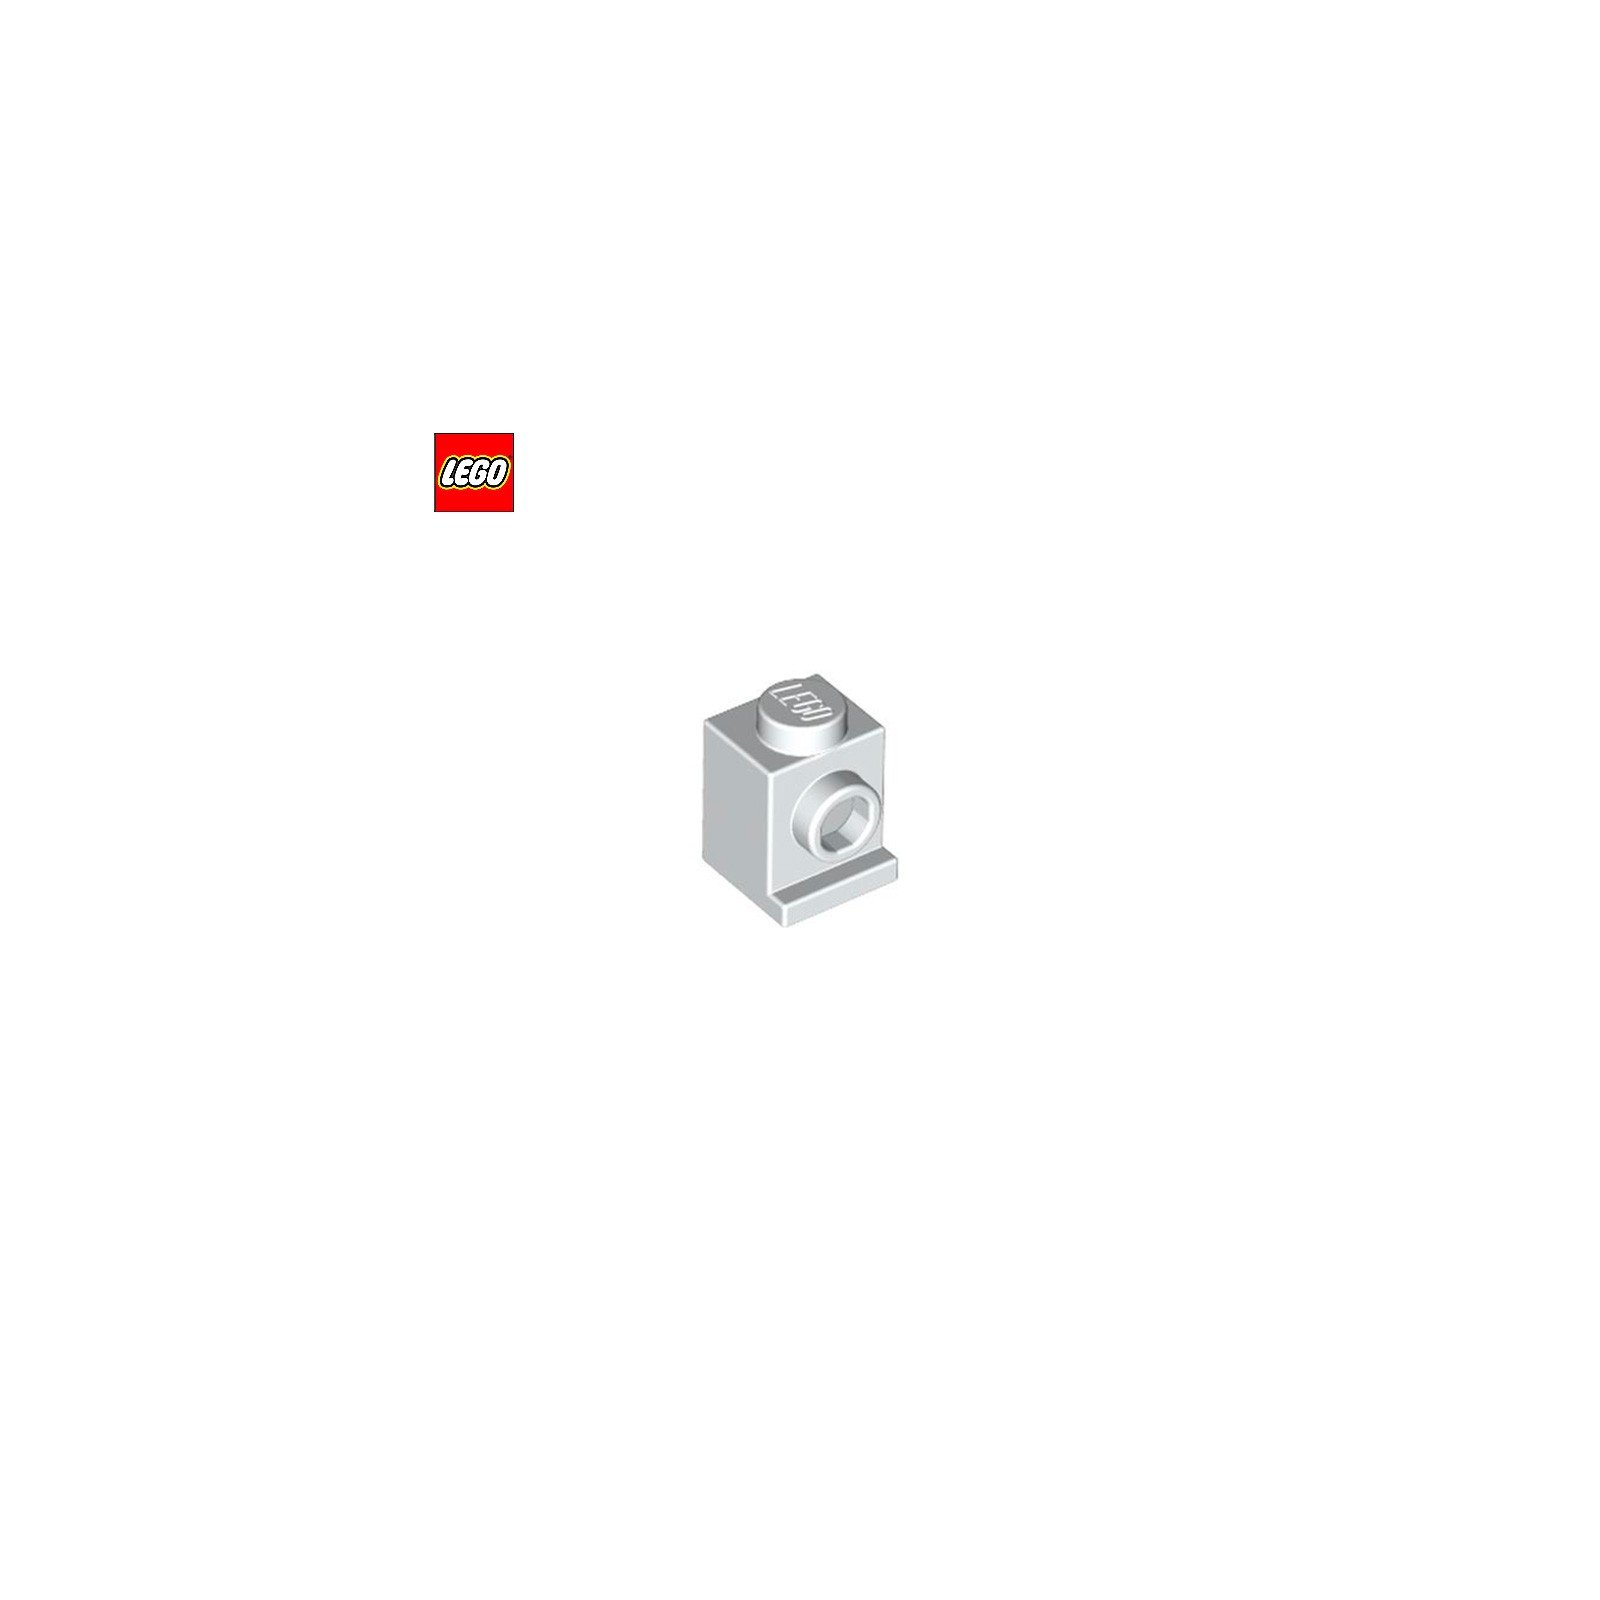 Brique angulaire 1x1 avec tenon latéral - Pièce LEGO® 4070